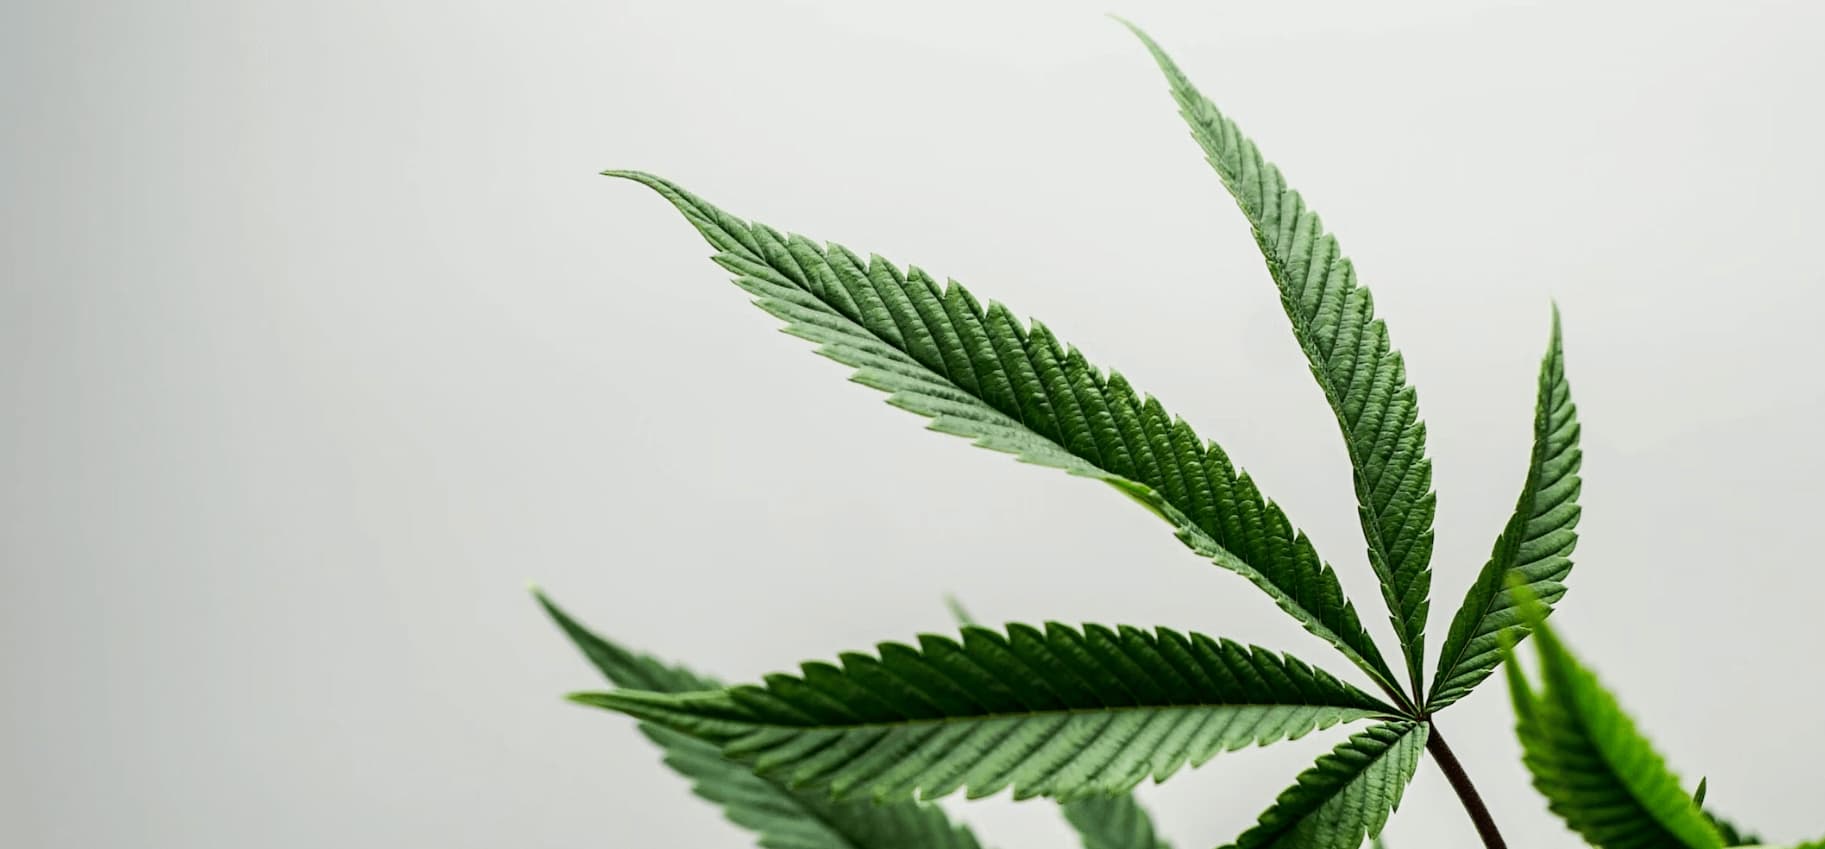 Semillas de cannabis para principiantes - Las variedades de cannabis más fáciles de cultivar para principiantes.